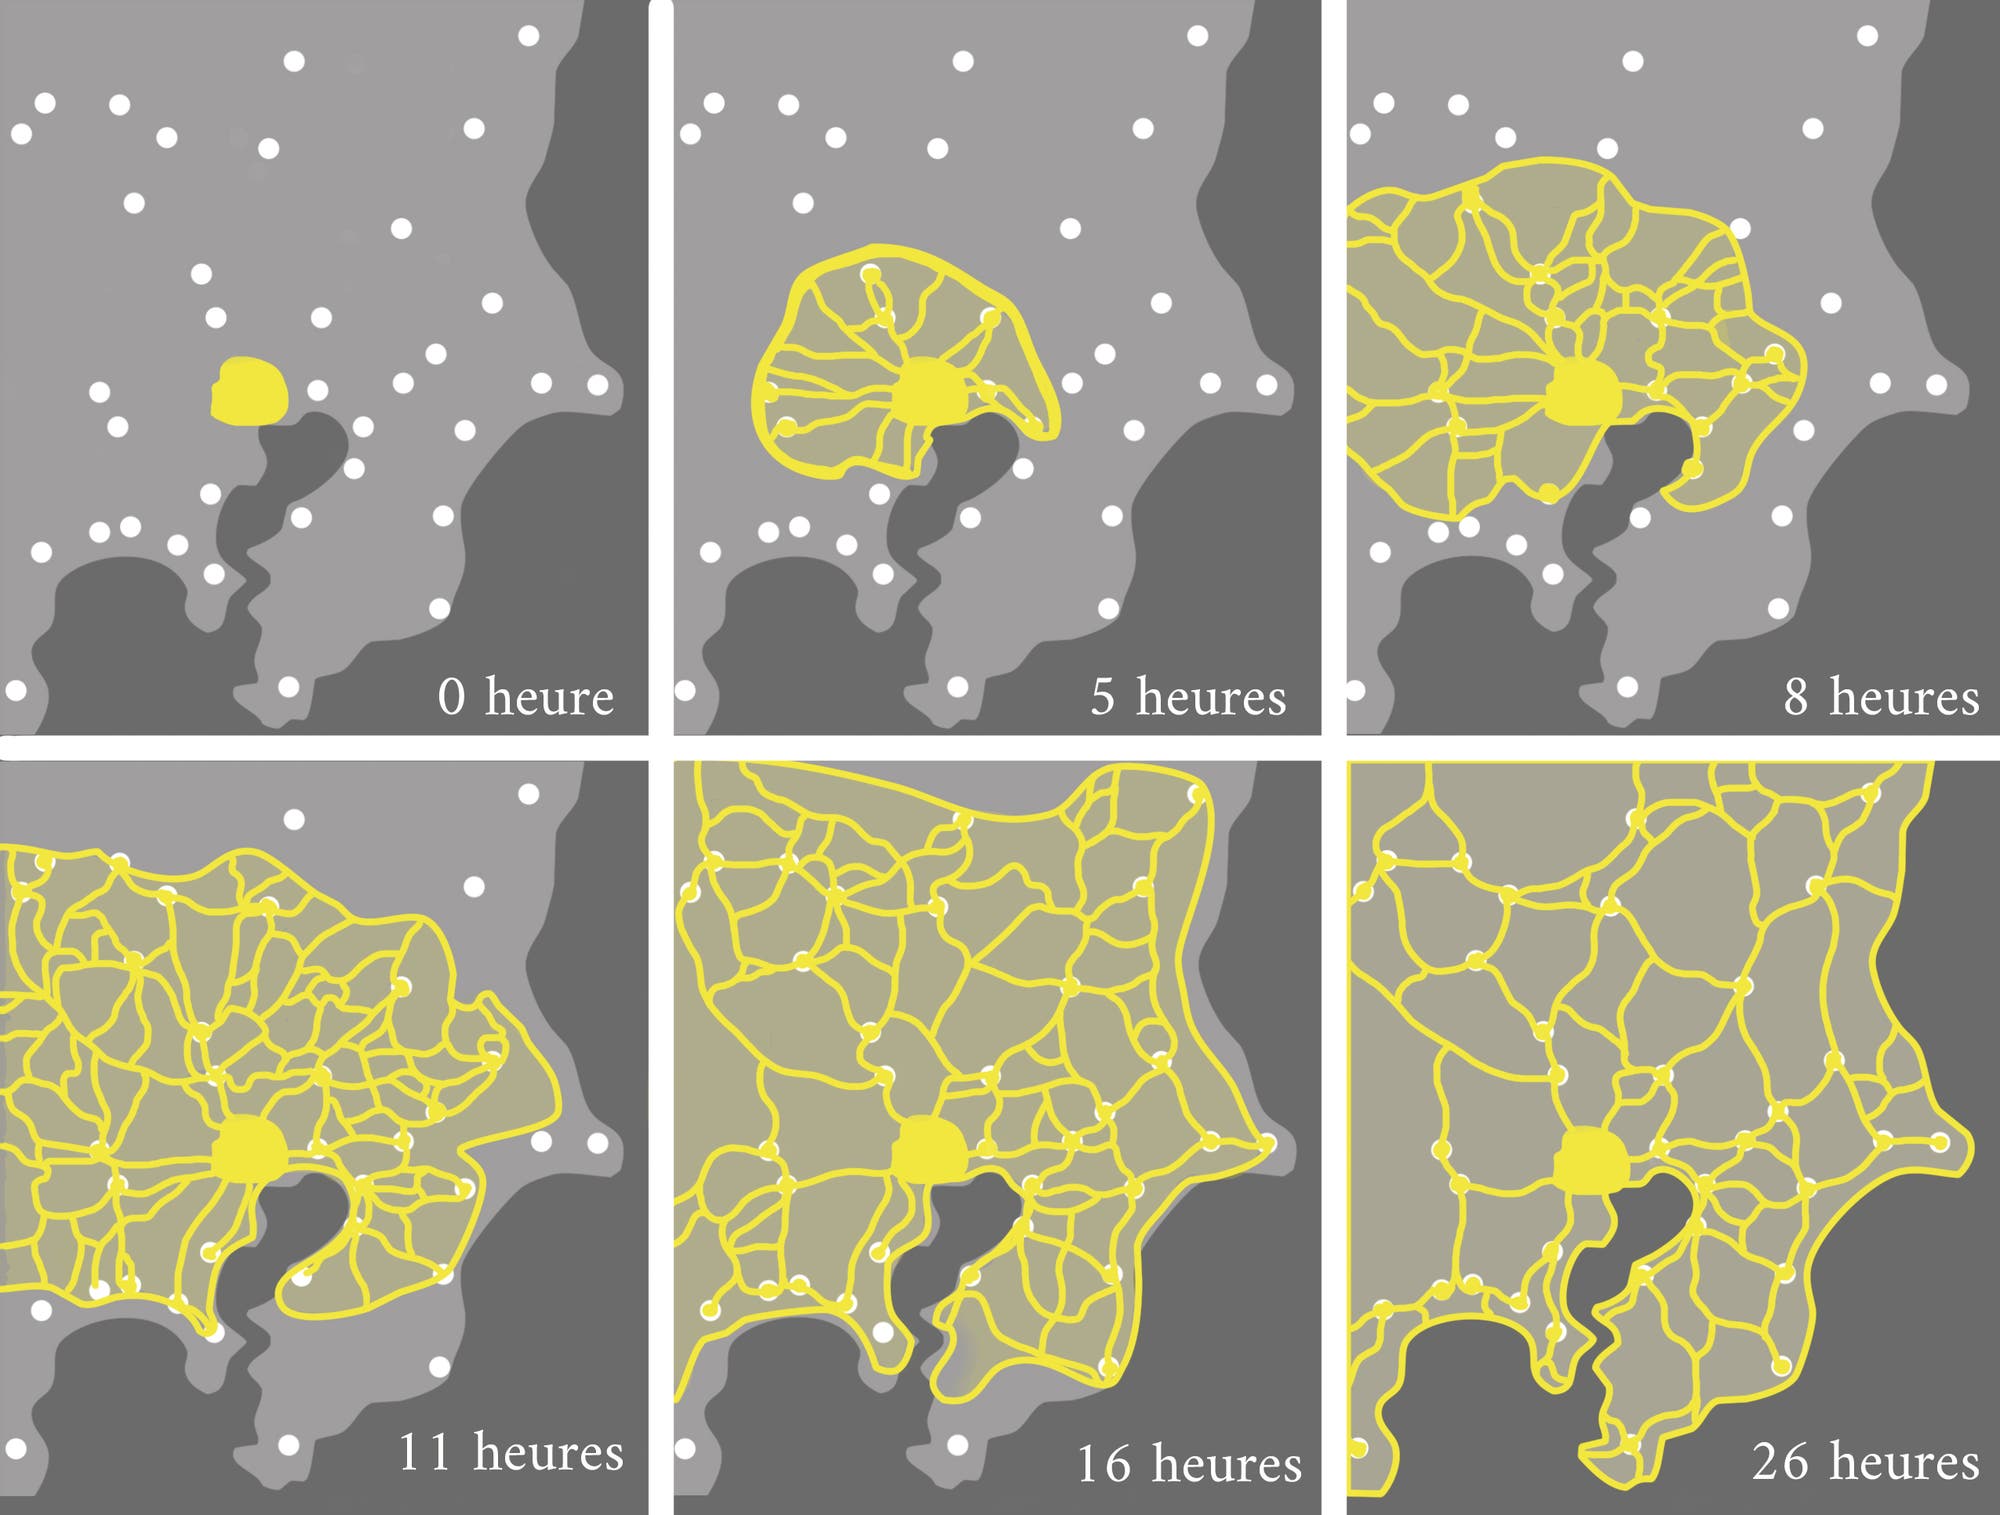 Die weißen Punkte stellen die verstreuten Haferflocken dar, die im Muster von Städten in der Metropolregion Tokio angeordnet sind. Der Schleimpilz (gelb) bildet nach mehreren Stunden ein Netzwerk, das die Futterquellen optimal verbindet.